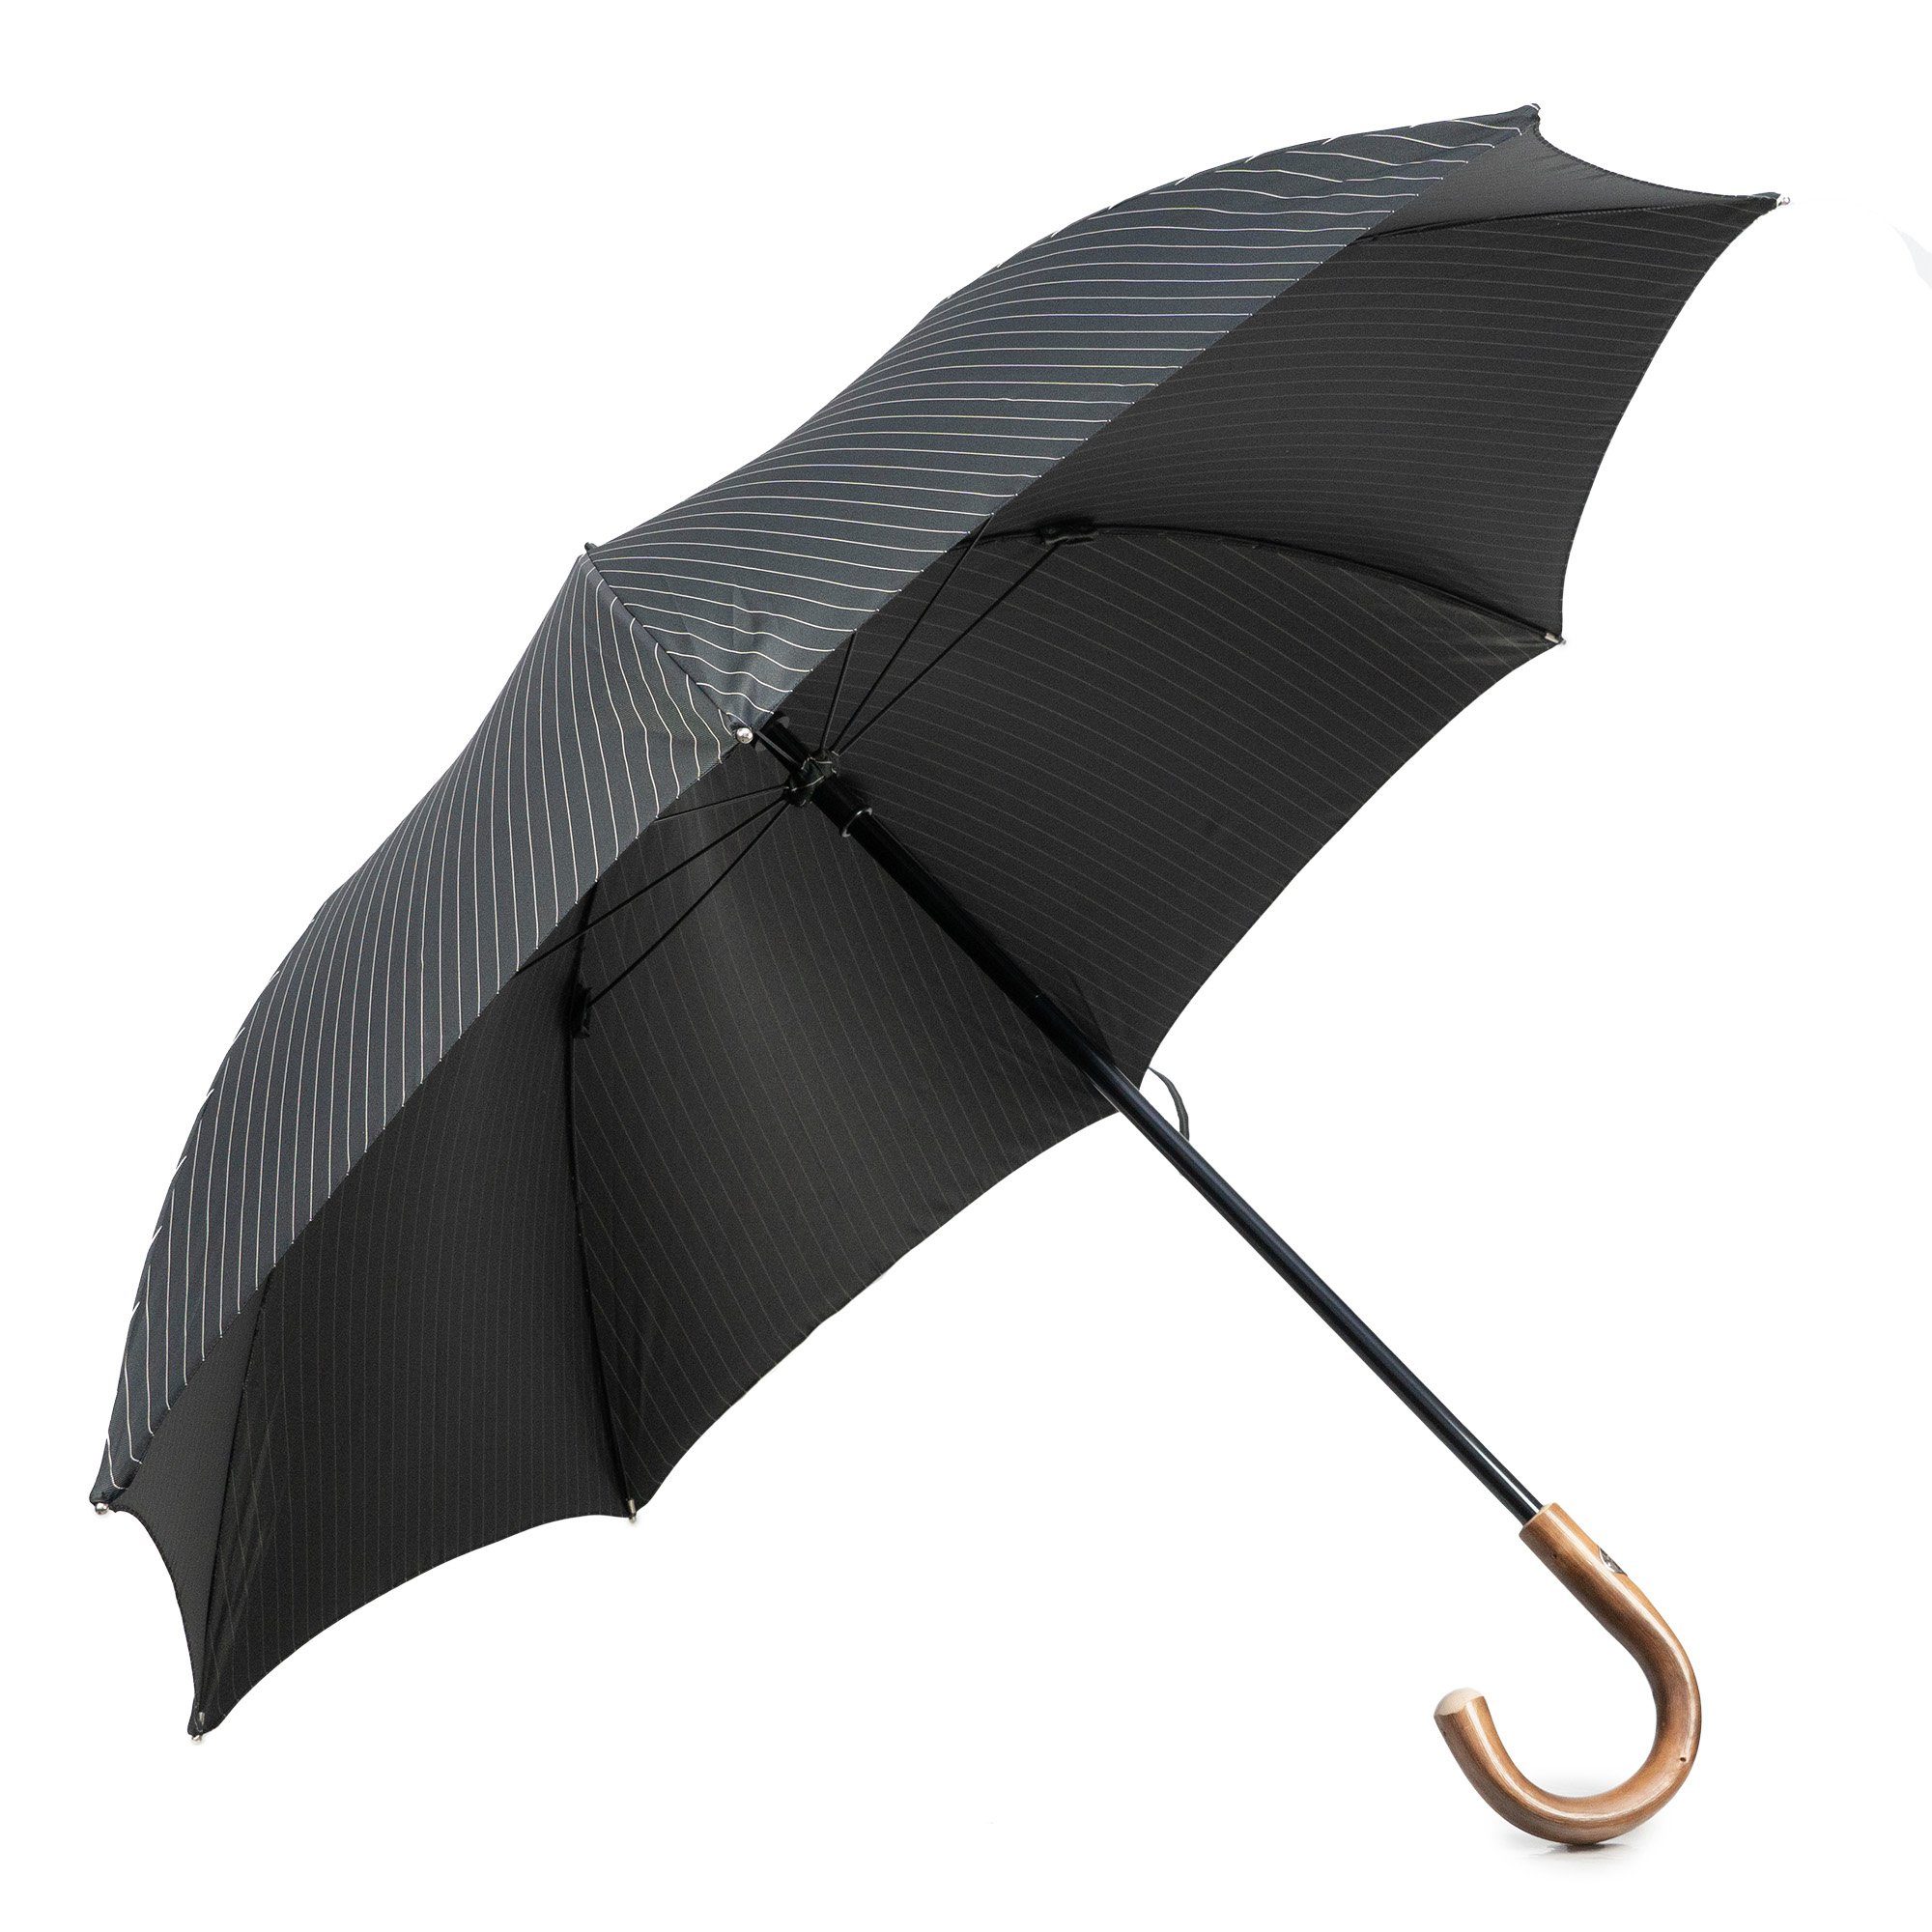 in Italy Stockregenschirm, Luxus-Regenschirm, Francesco schwarz-gestreift, Maglia Handmade